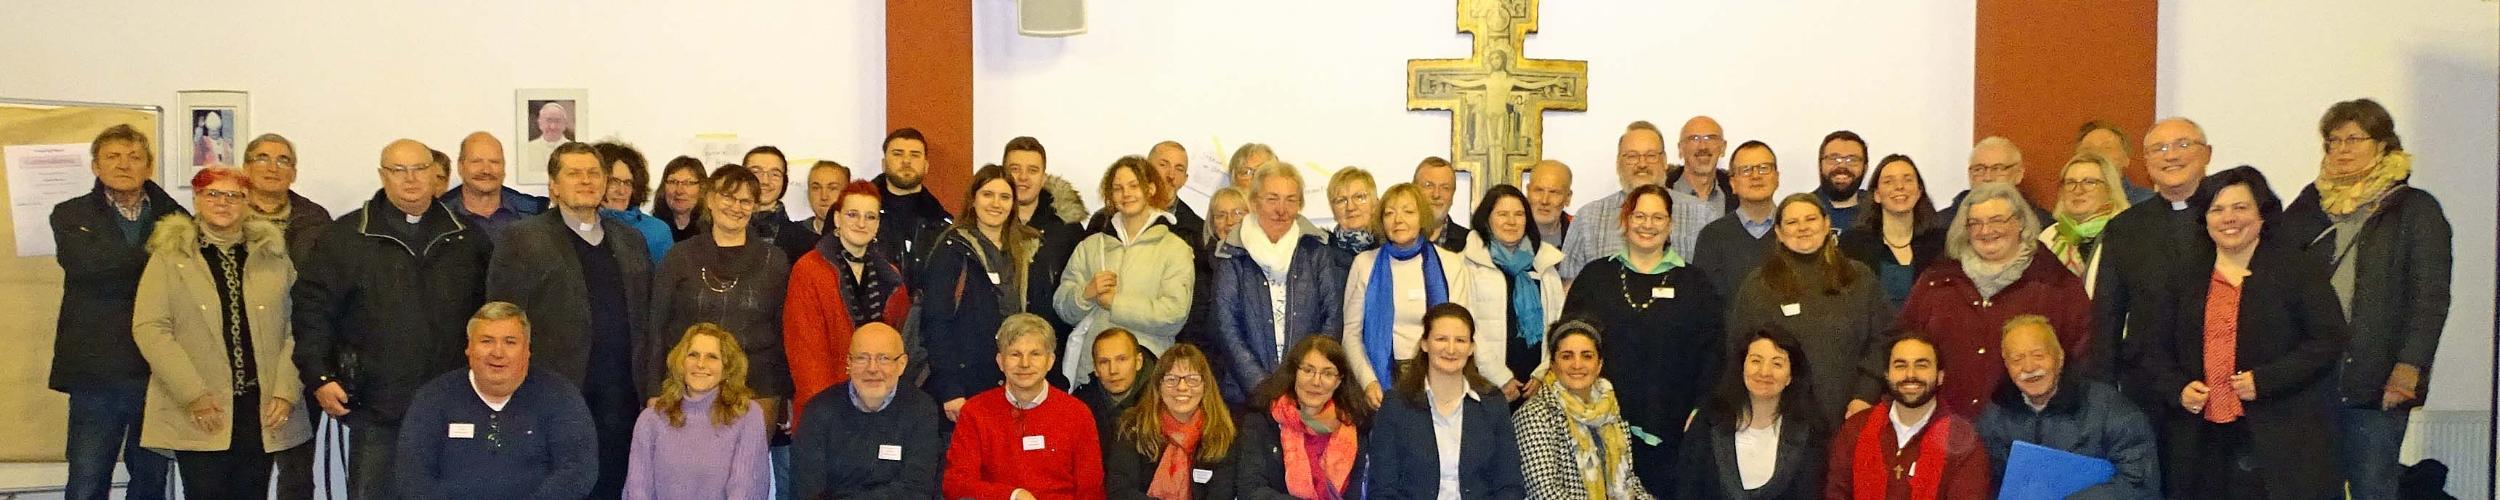 Groß-Gerau, 01. Februar 2023: Die Mitglieder der Pastoralraumversammlung.